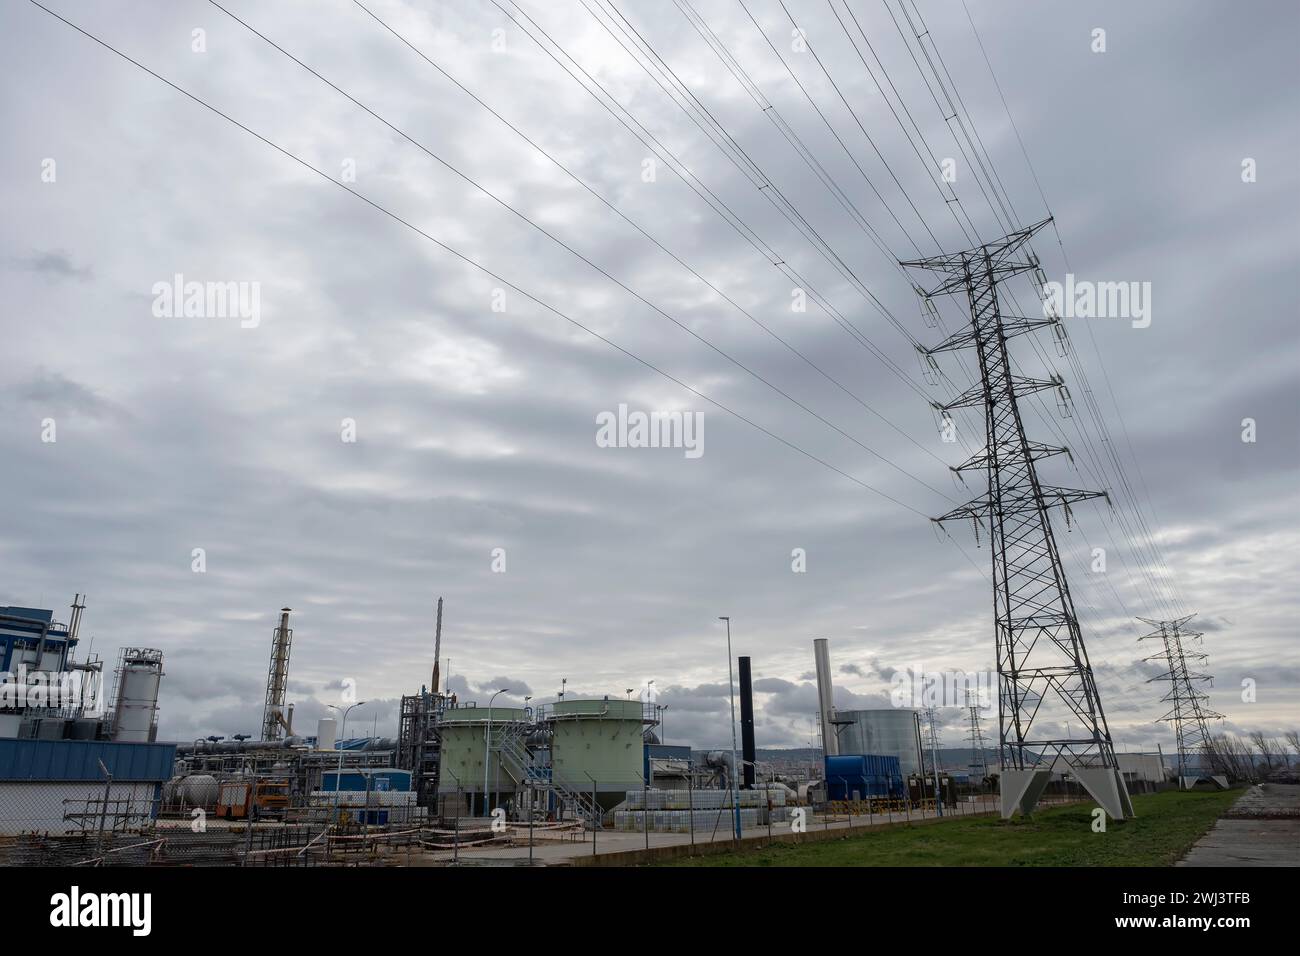 una torre elettrica di una linea ad alta tensione in un'area industriale con una fabbrica con camini, serbatoi e silos, in una giornata nuvolosa, ambiente industriale Foto Stock